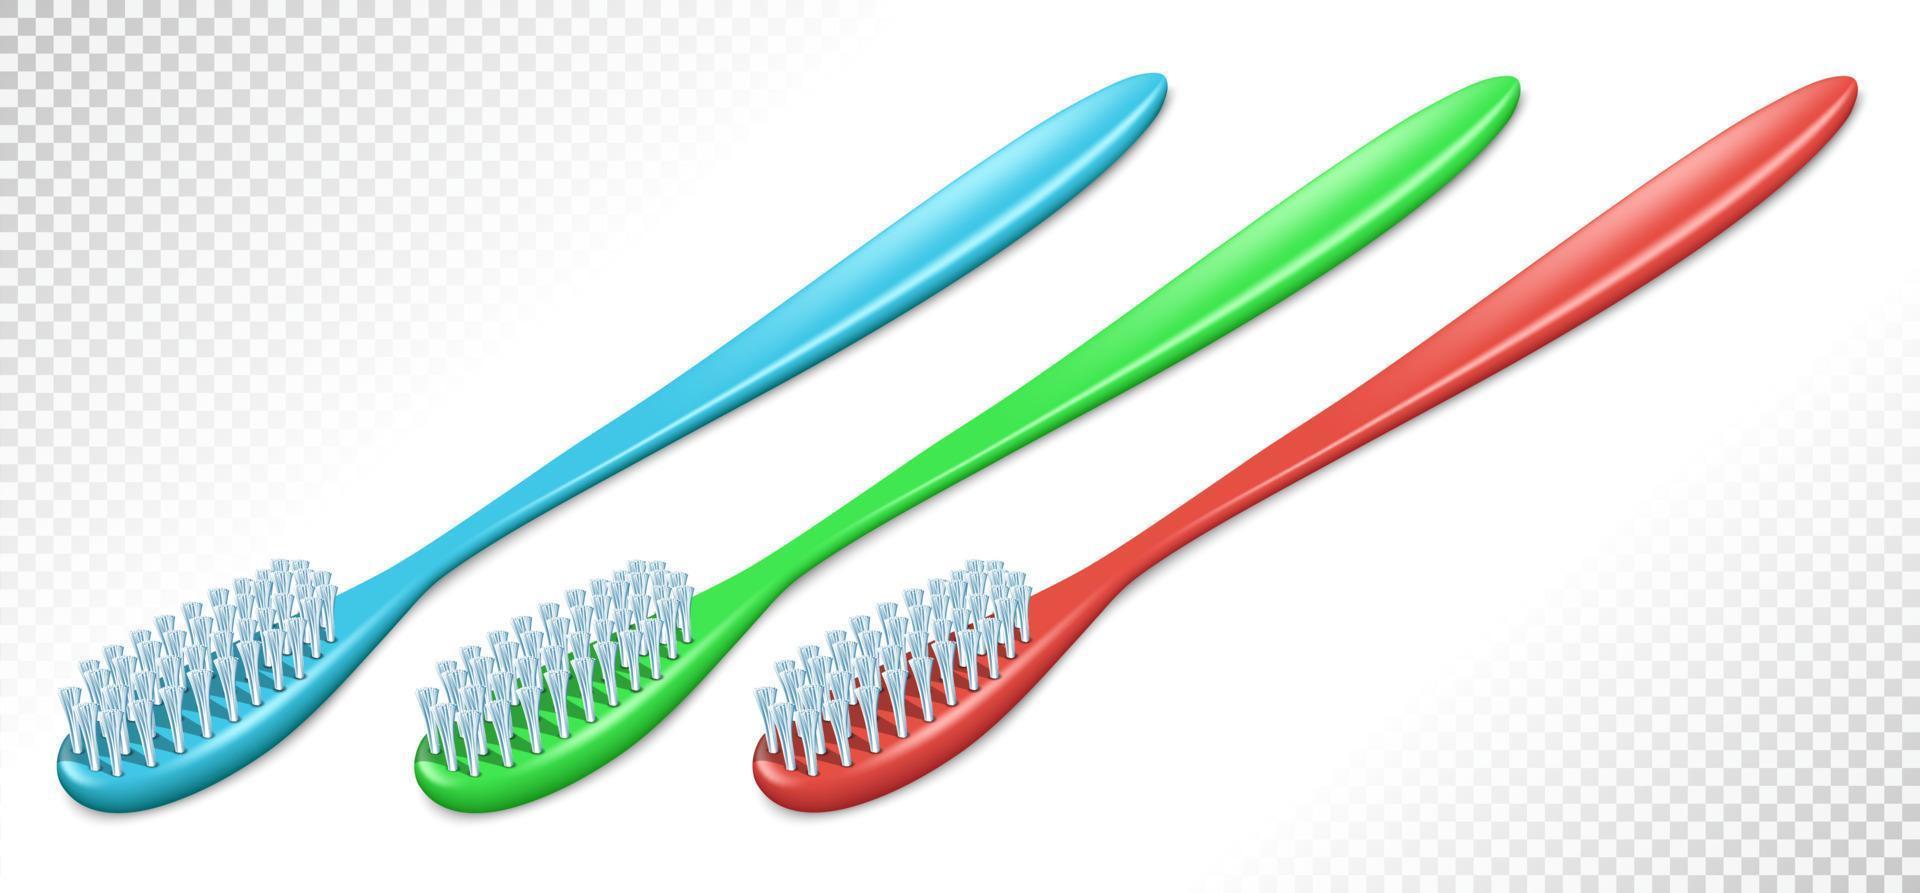 brosses à dents en plastique de différentes couleurs. voir en perspective. isolé sur fond transparent. illustration vectorielle. vecteur